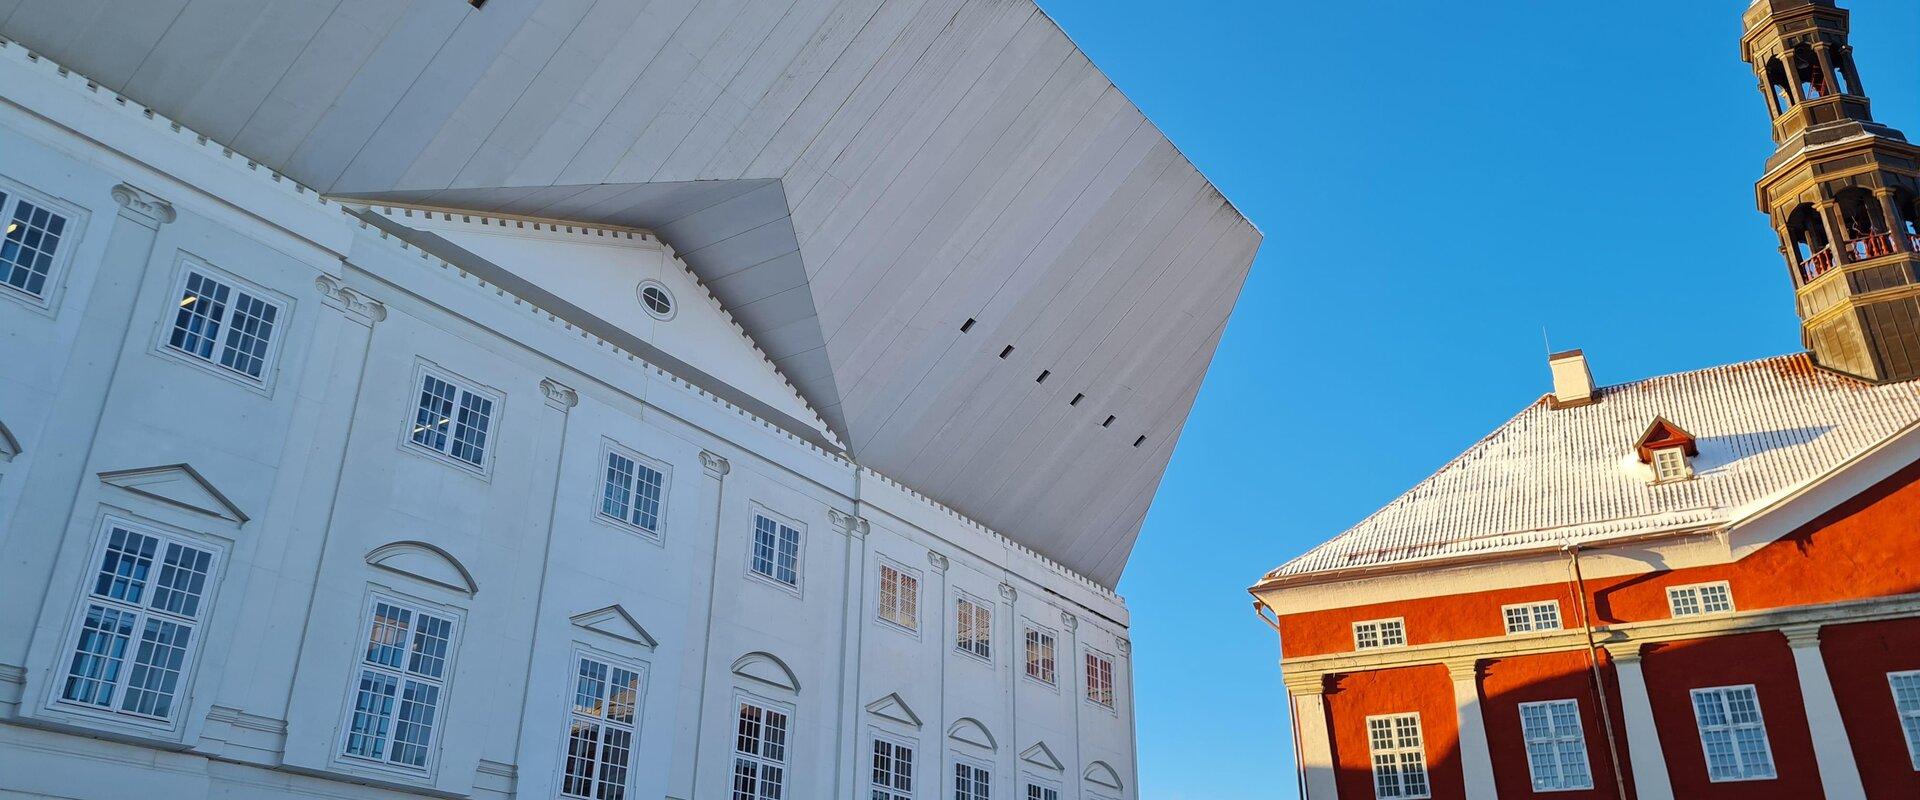 Das Gebäude des Narva Colleges der Universität Tartu